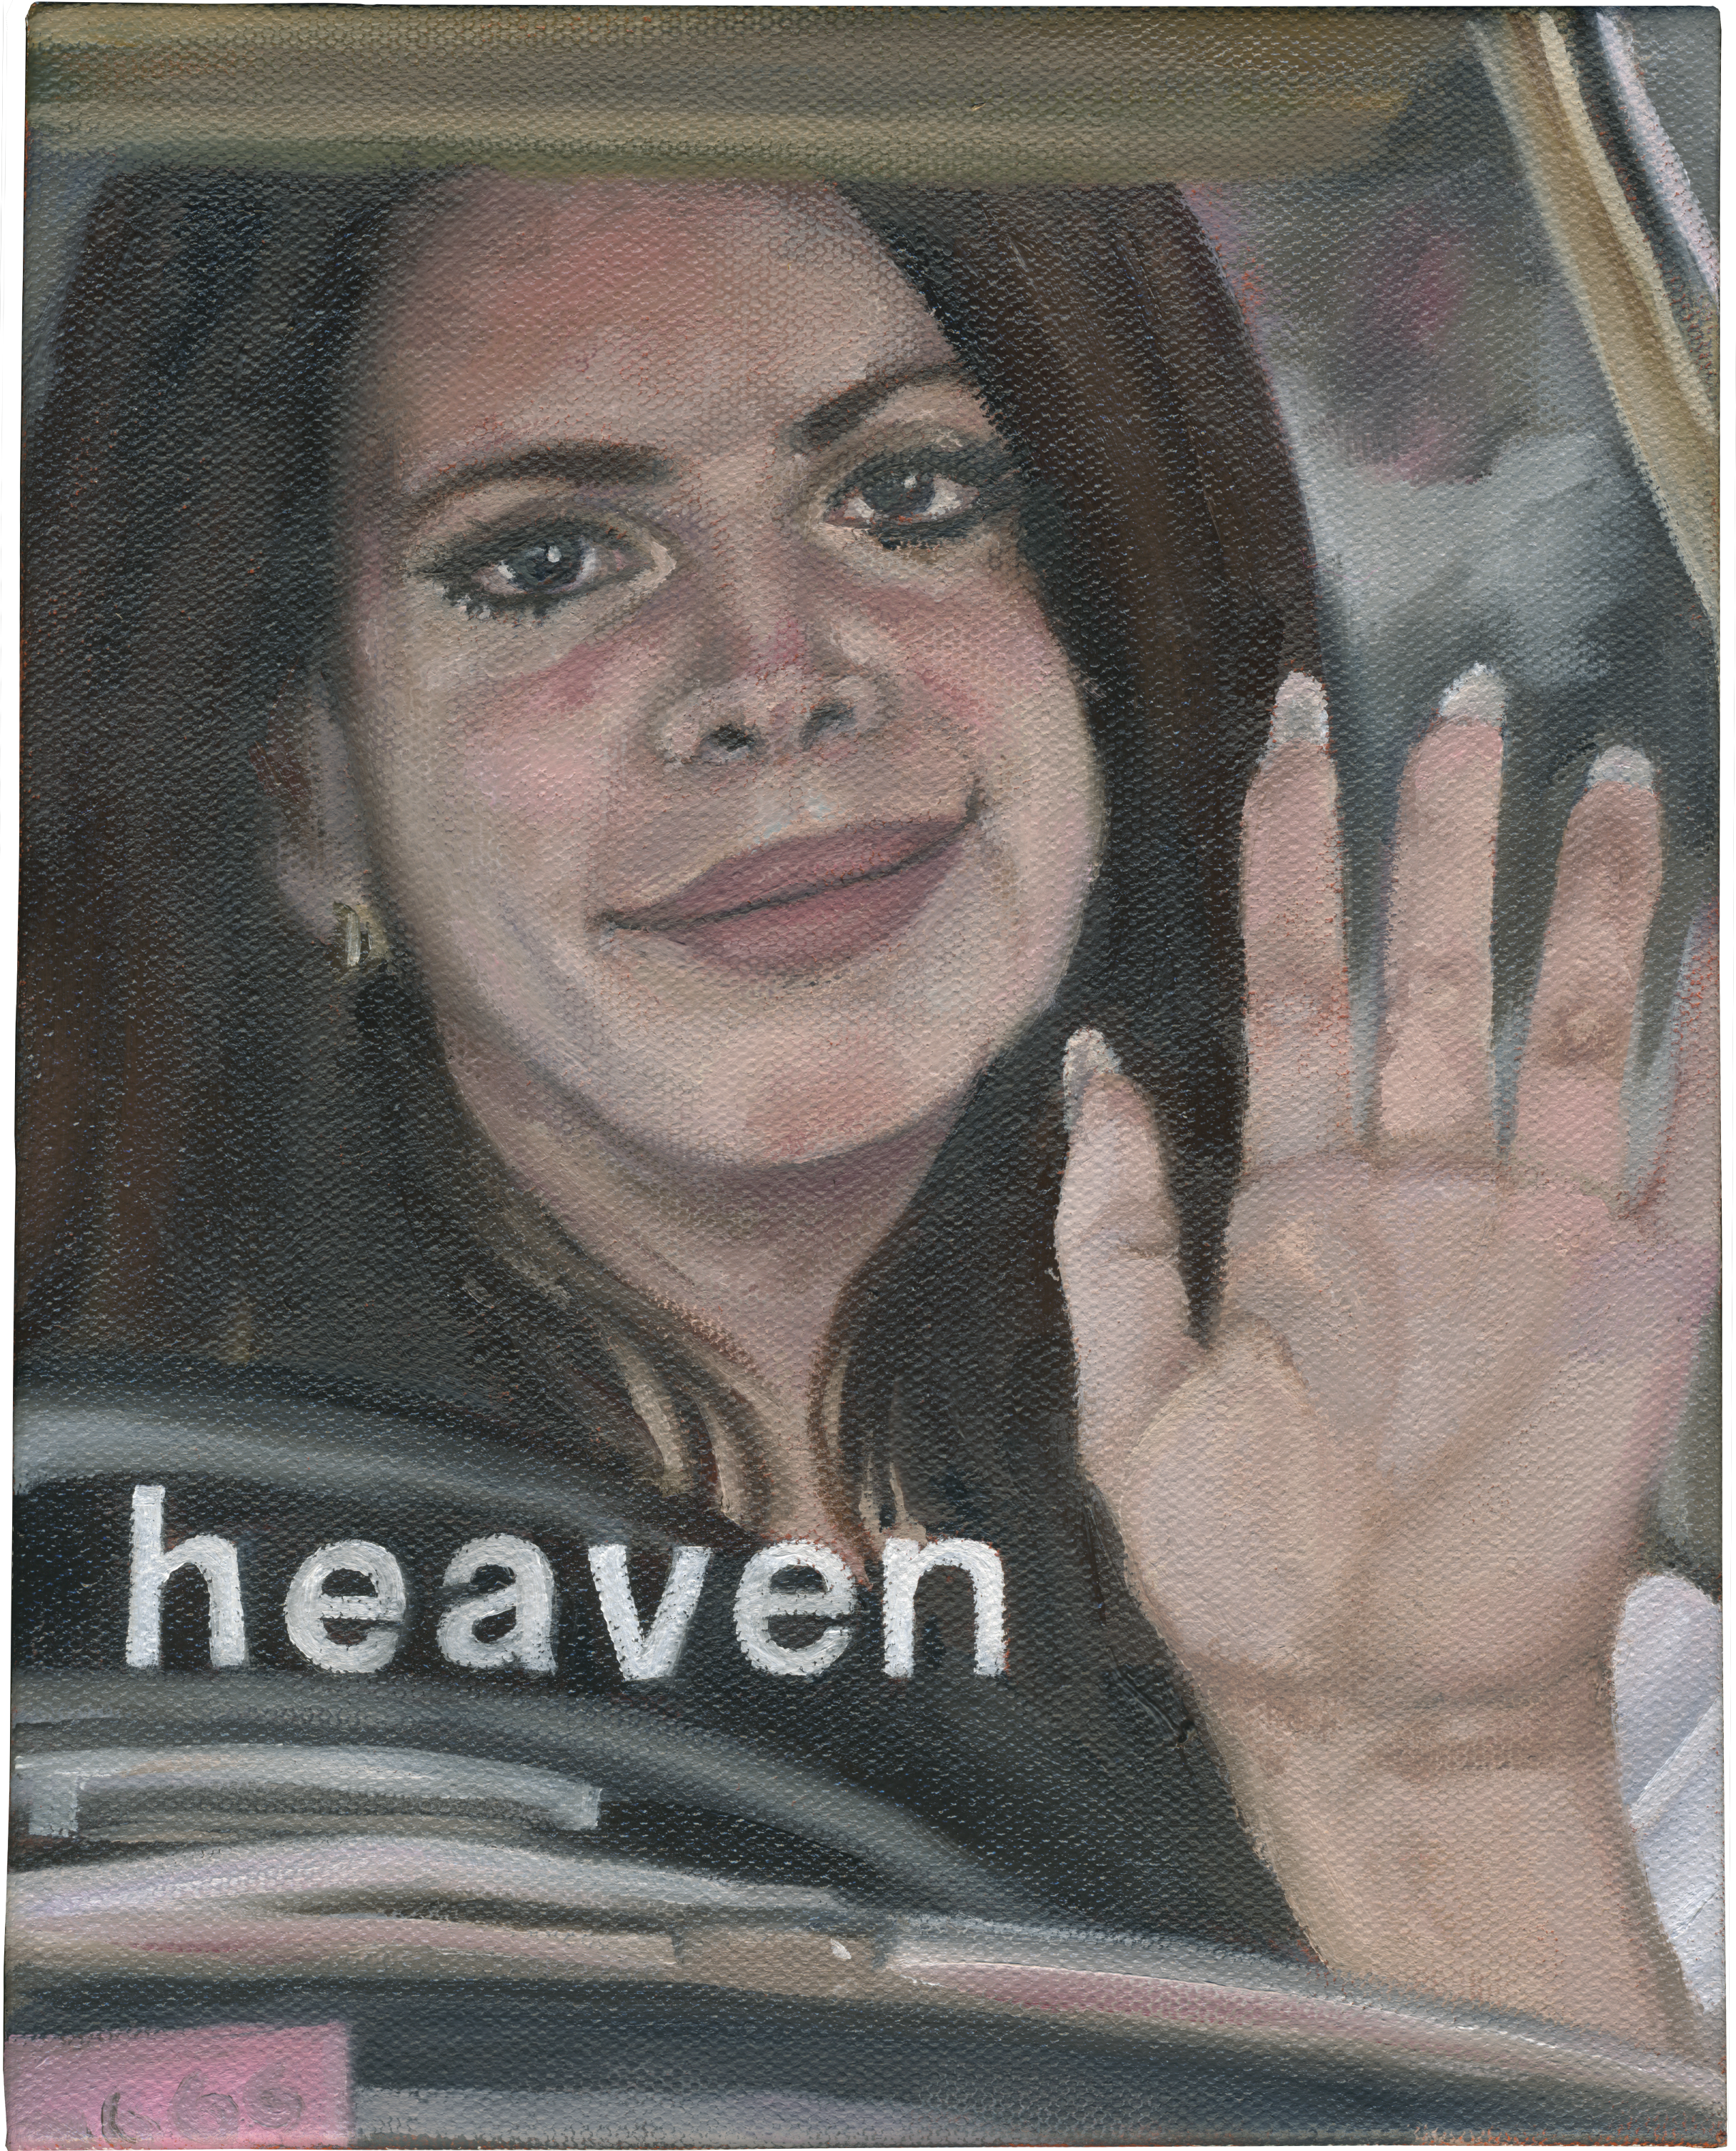 Lana ii (heaven)